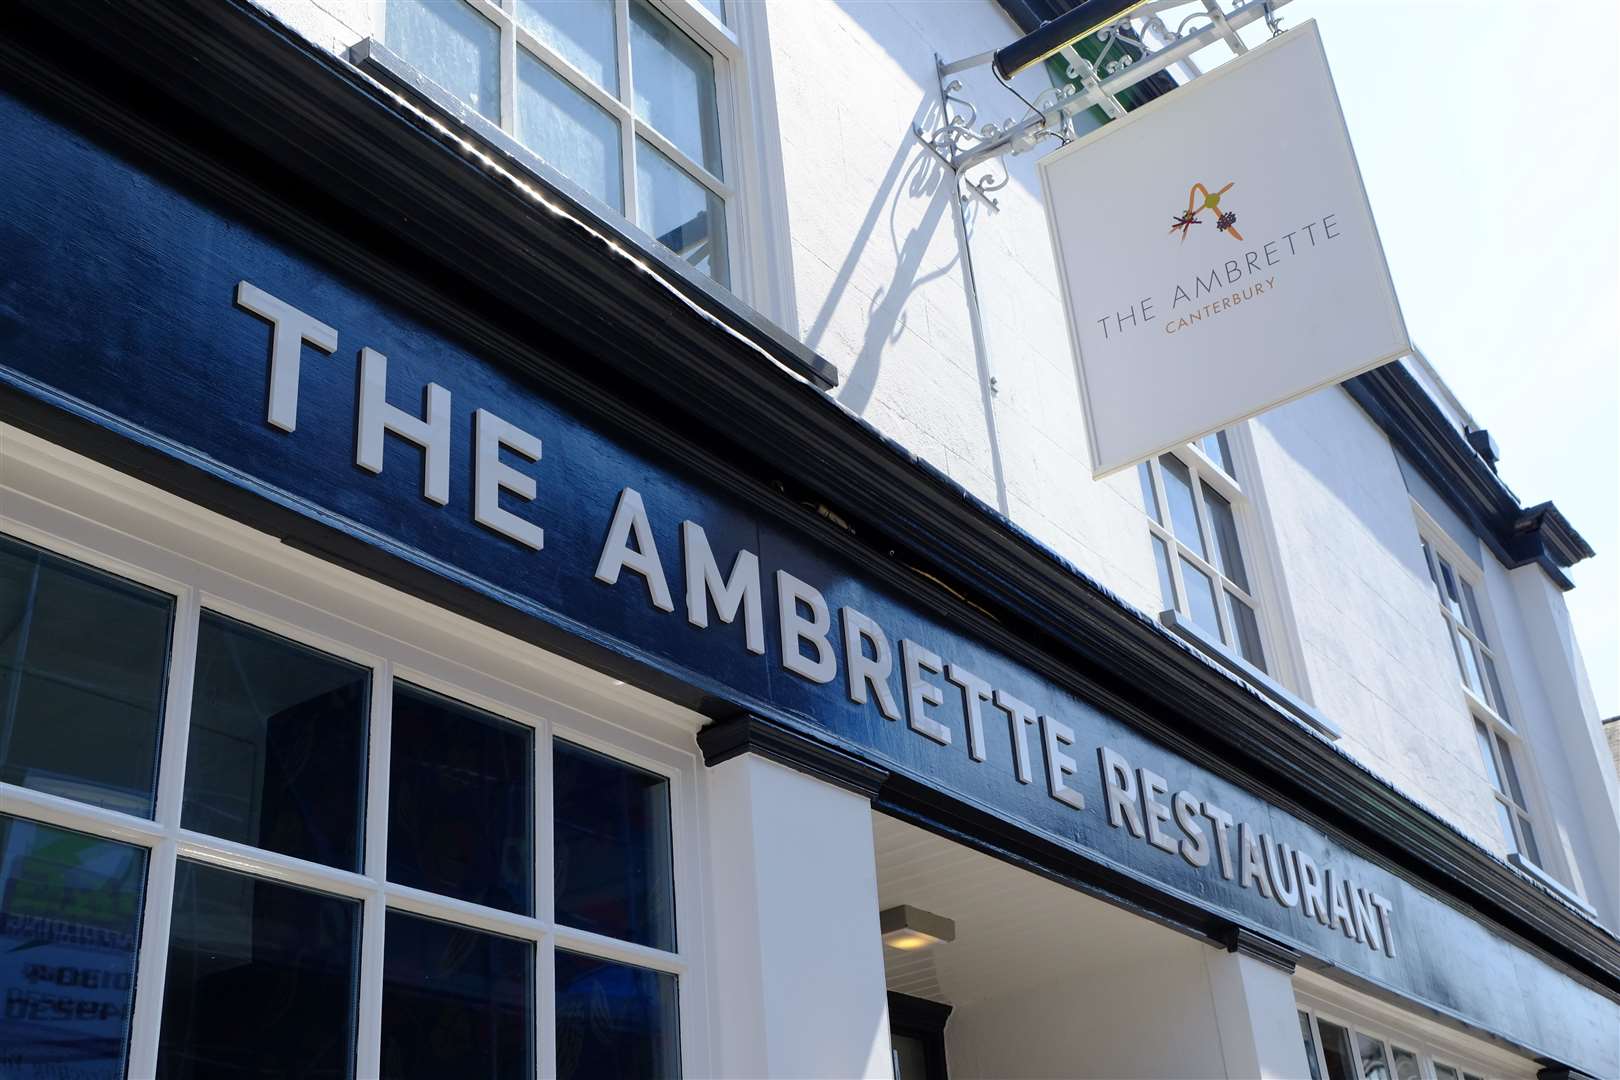 The Ambrette in Canterbury